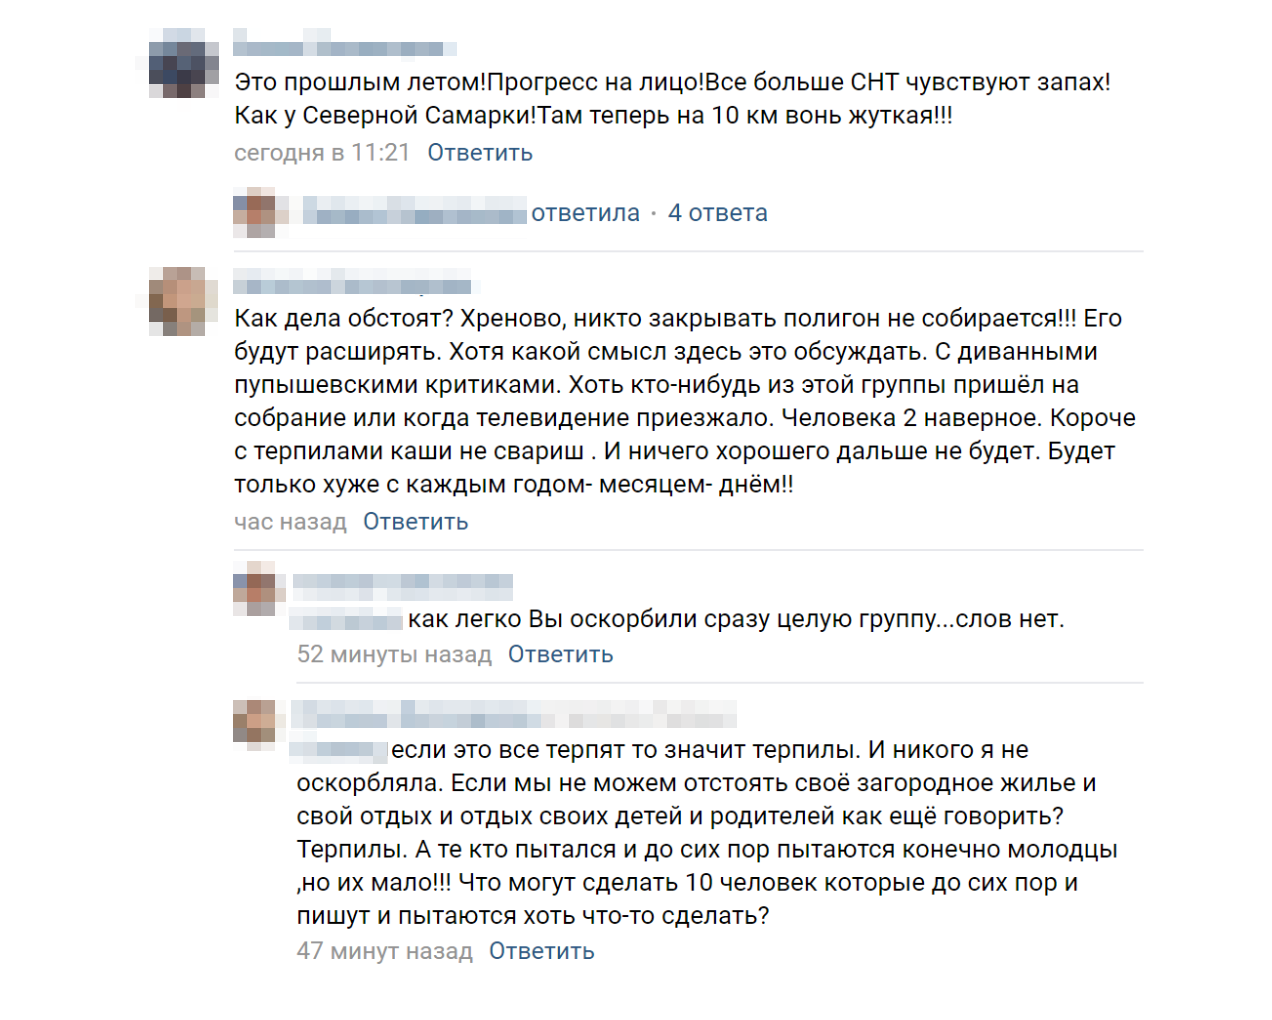 В садоводстве Пупышево тоже недовольны и пишут петиции против свалки